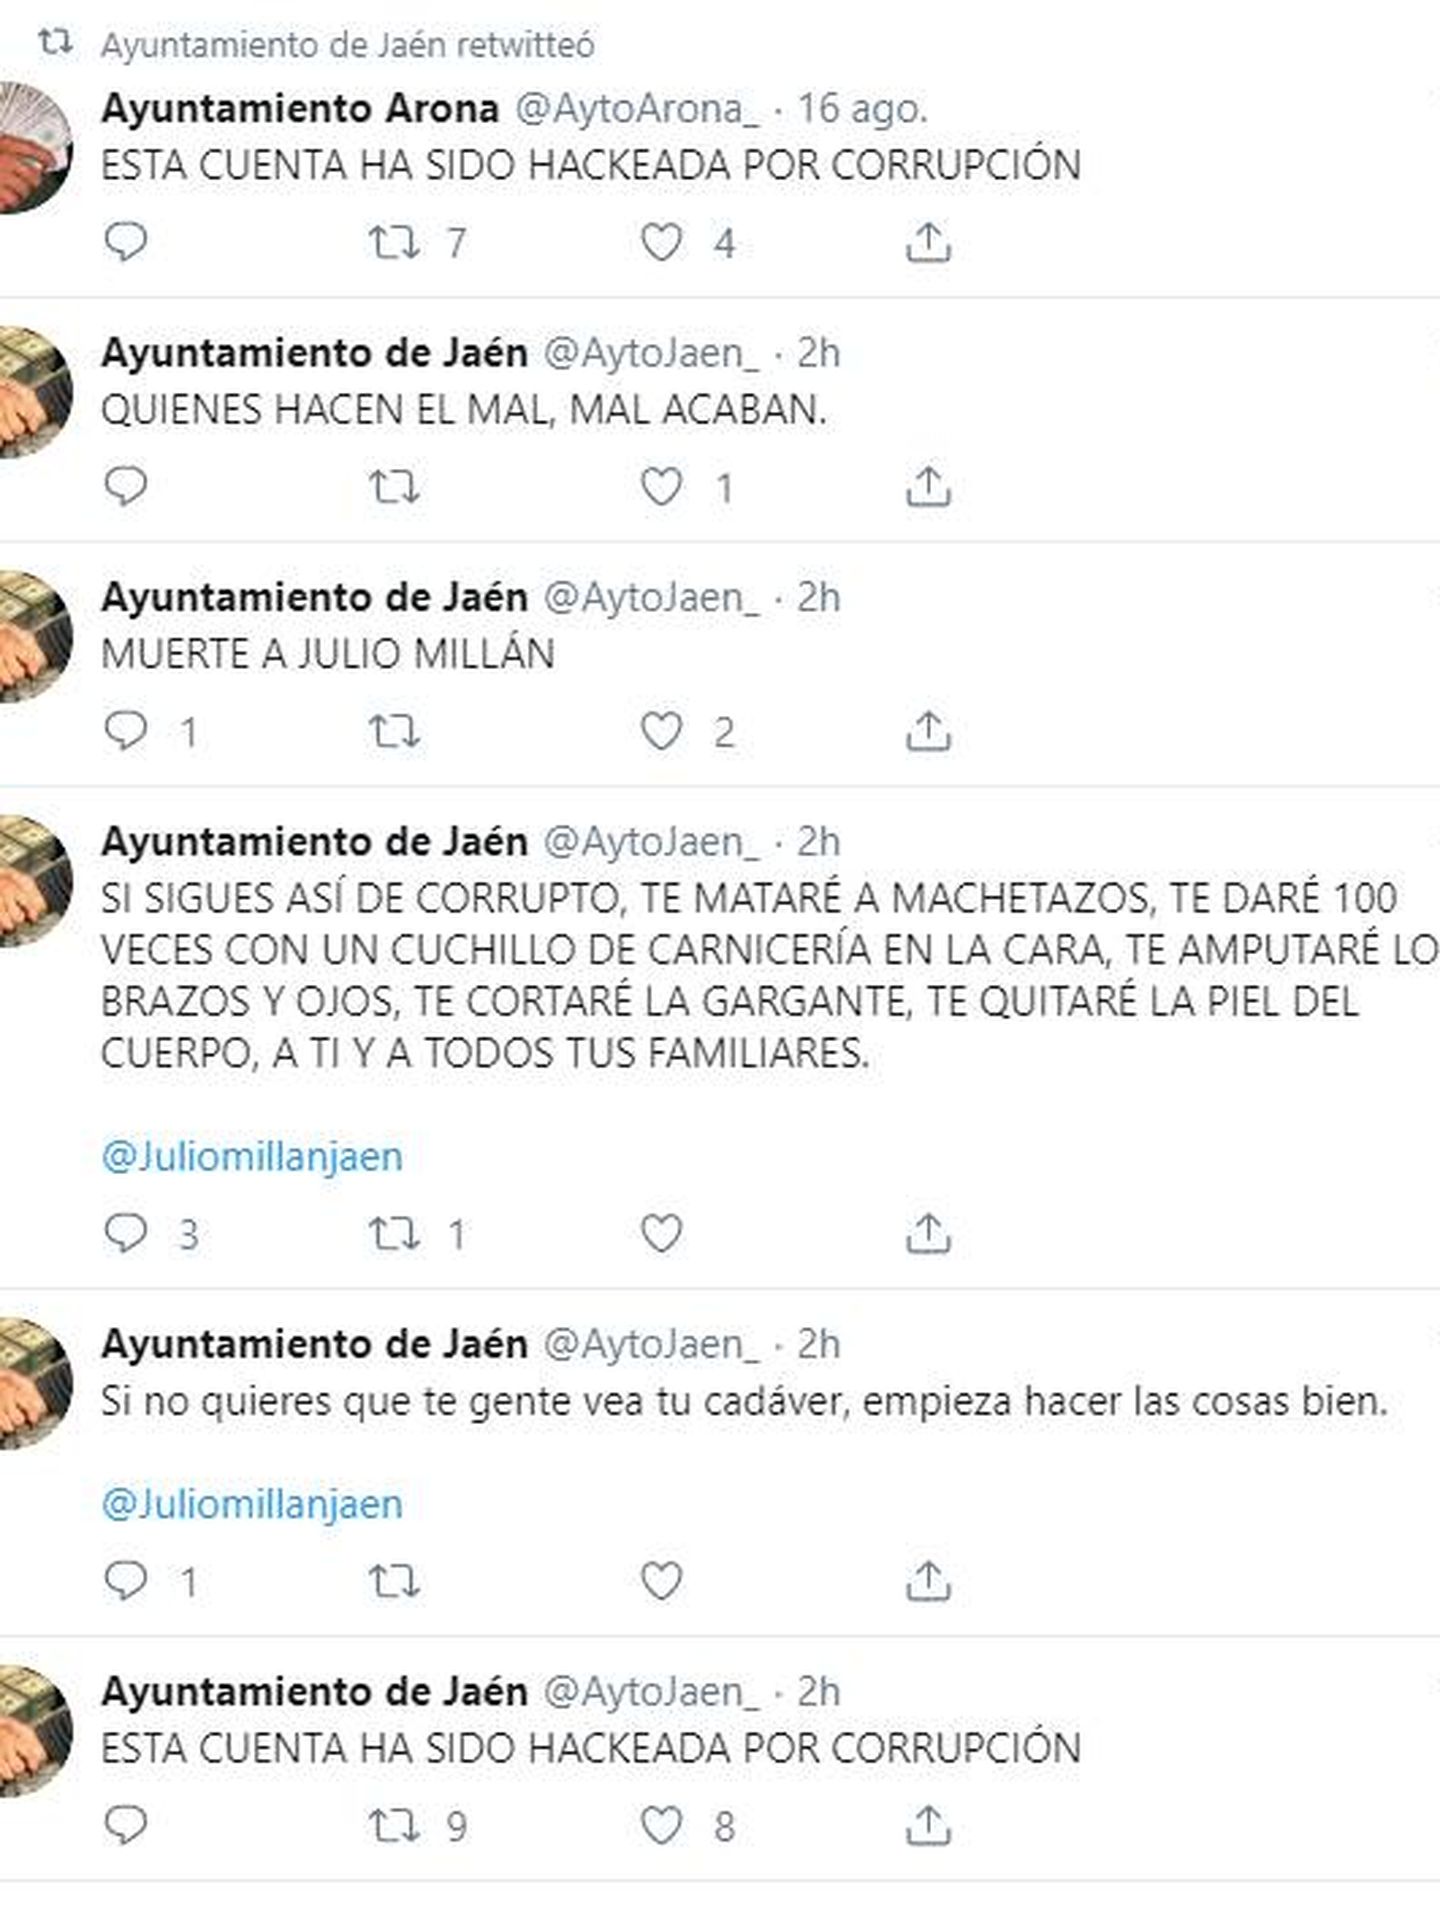 Captura de la cuenta de Twitter del Ayuntamiento de Jaén.